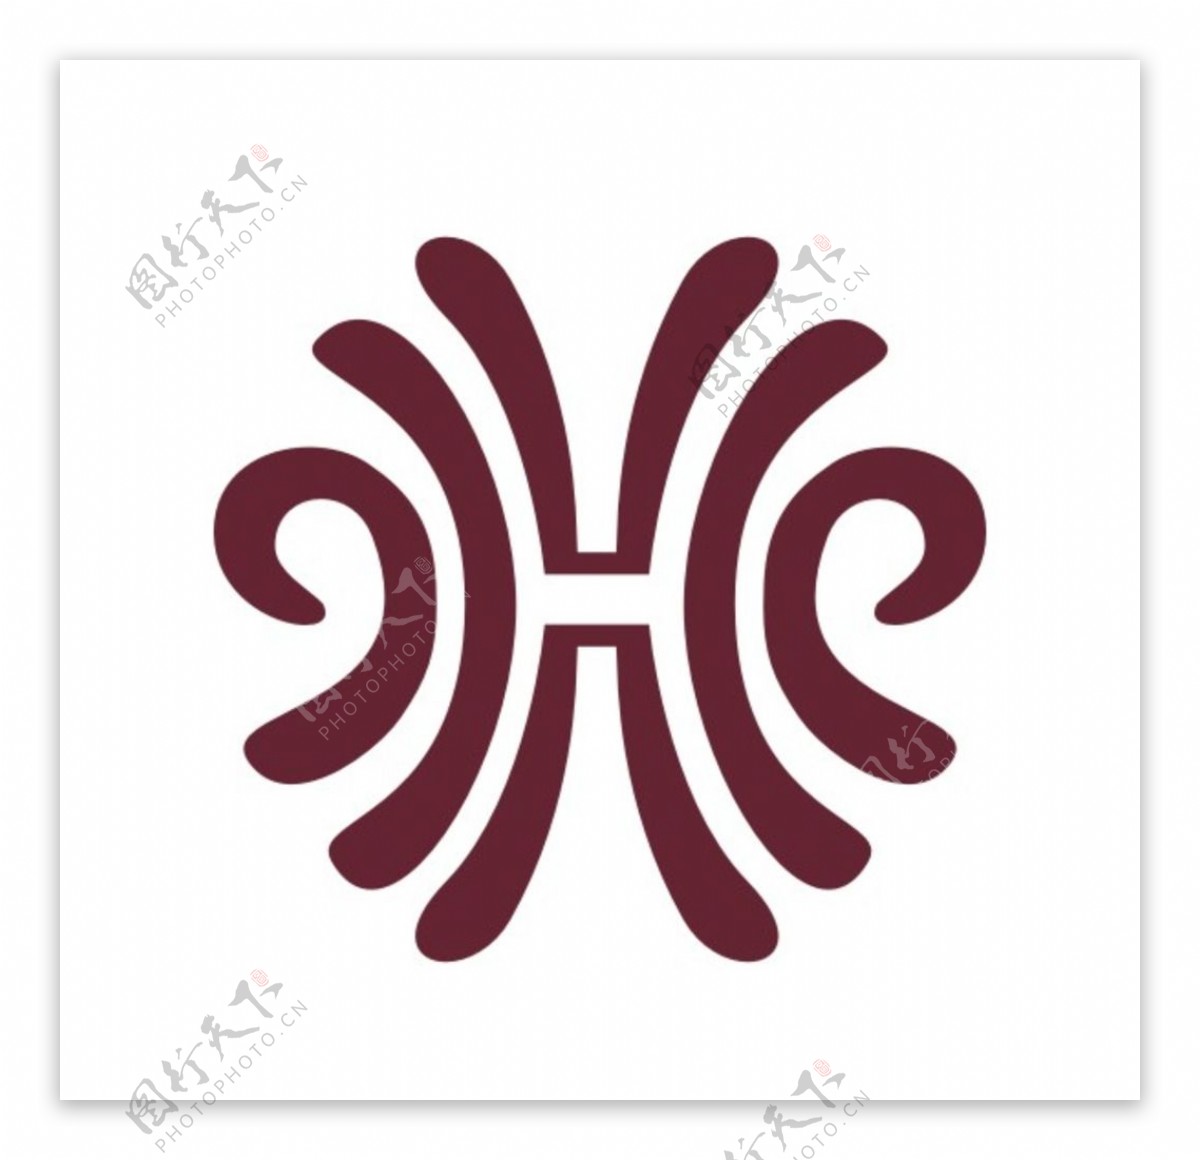 太平洋大酒店logo矢量素材